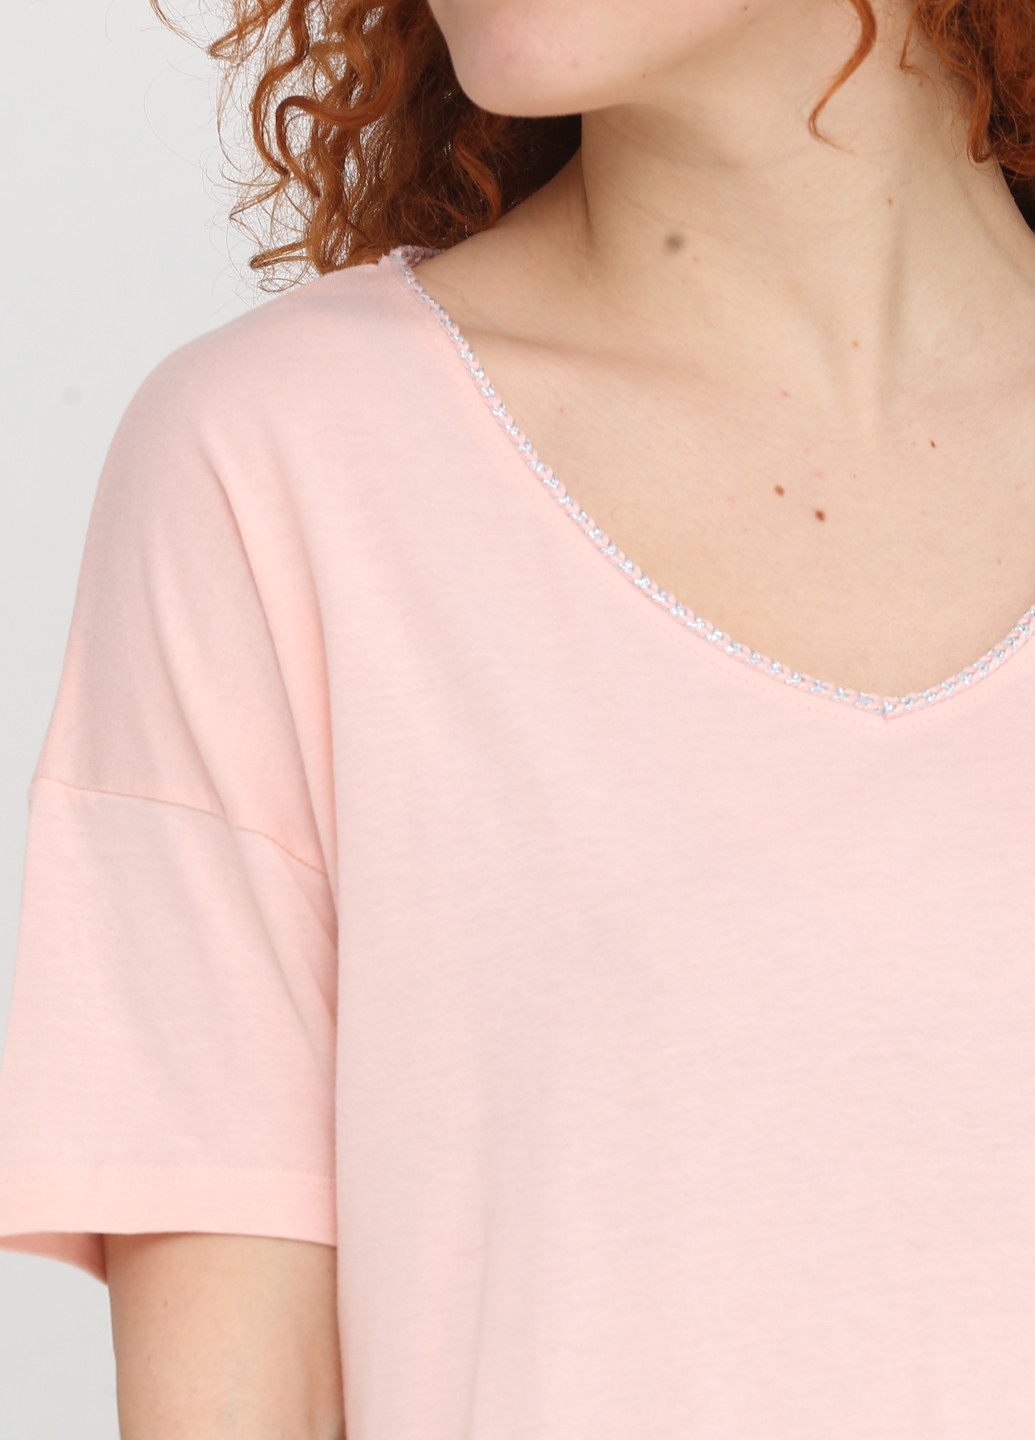 Персиковая летняя футболка Women'secret